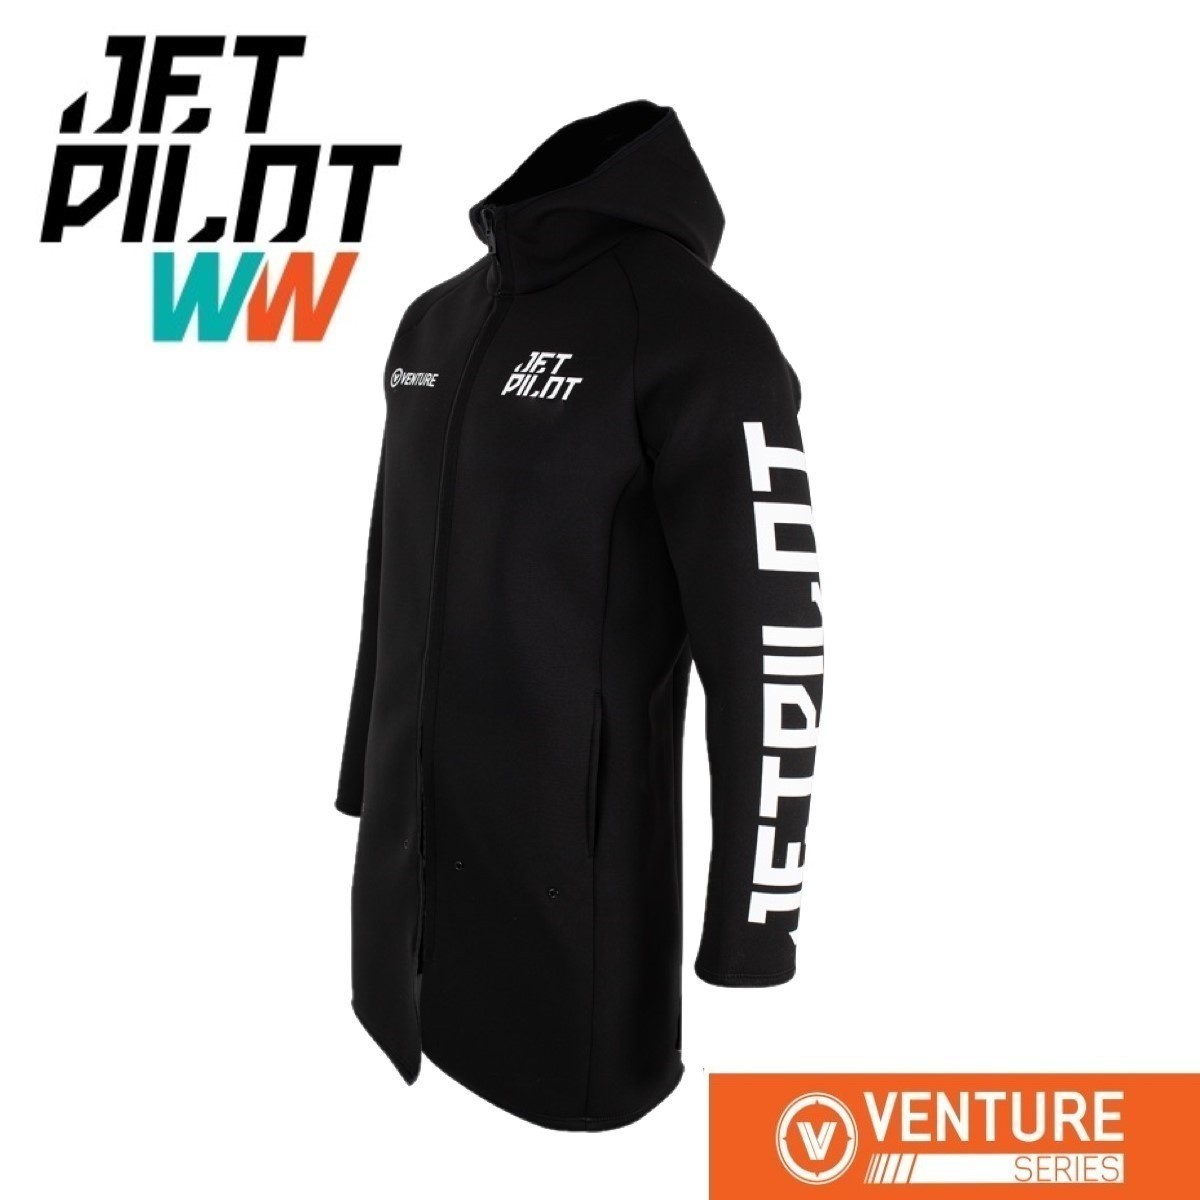 ジェットパイロット JETPILOT マリンコート 送料無料 ベンチャー ロング ツアー コート JA21164 ブラック XL ジェット マリンスポーツ